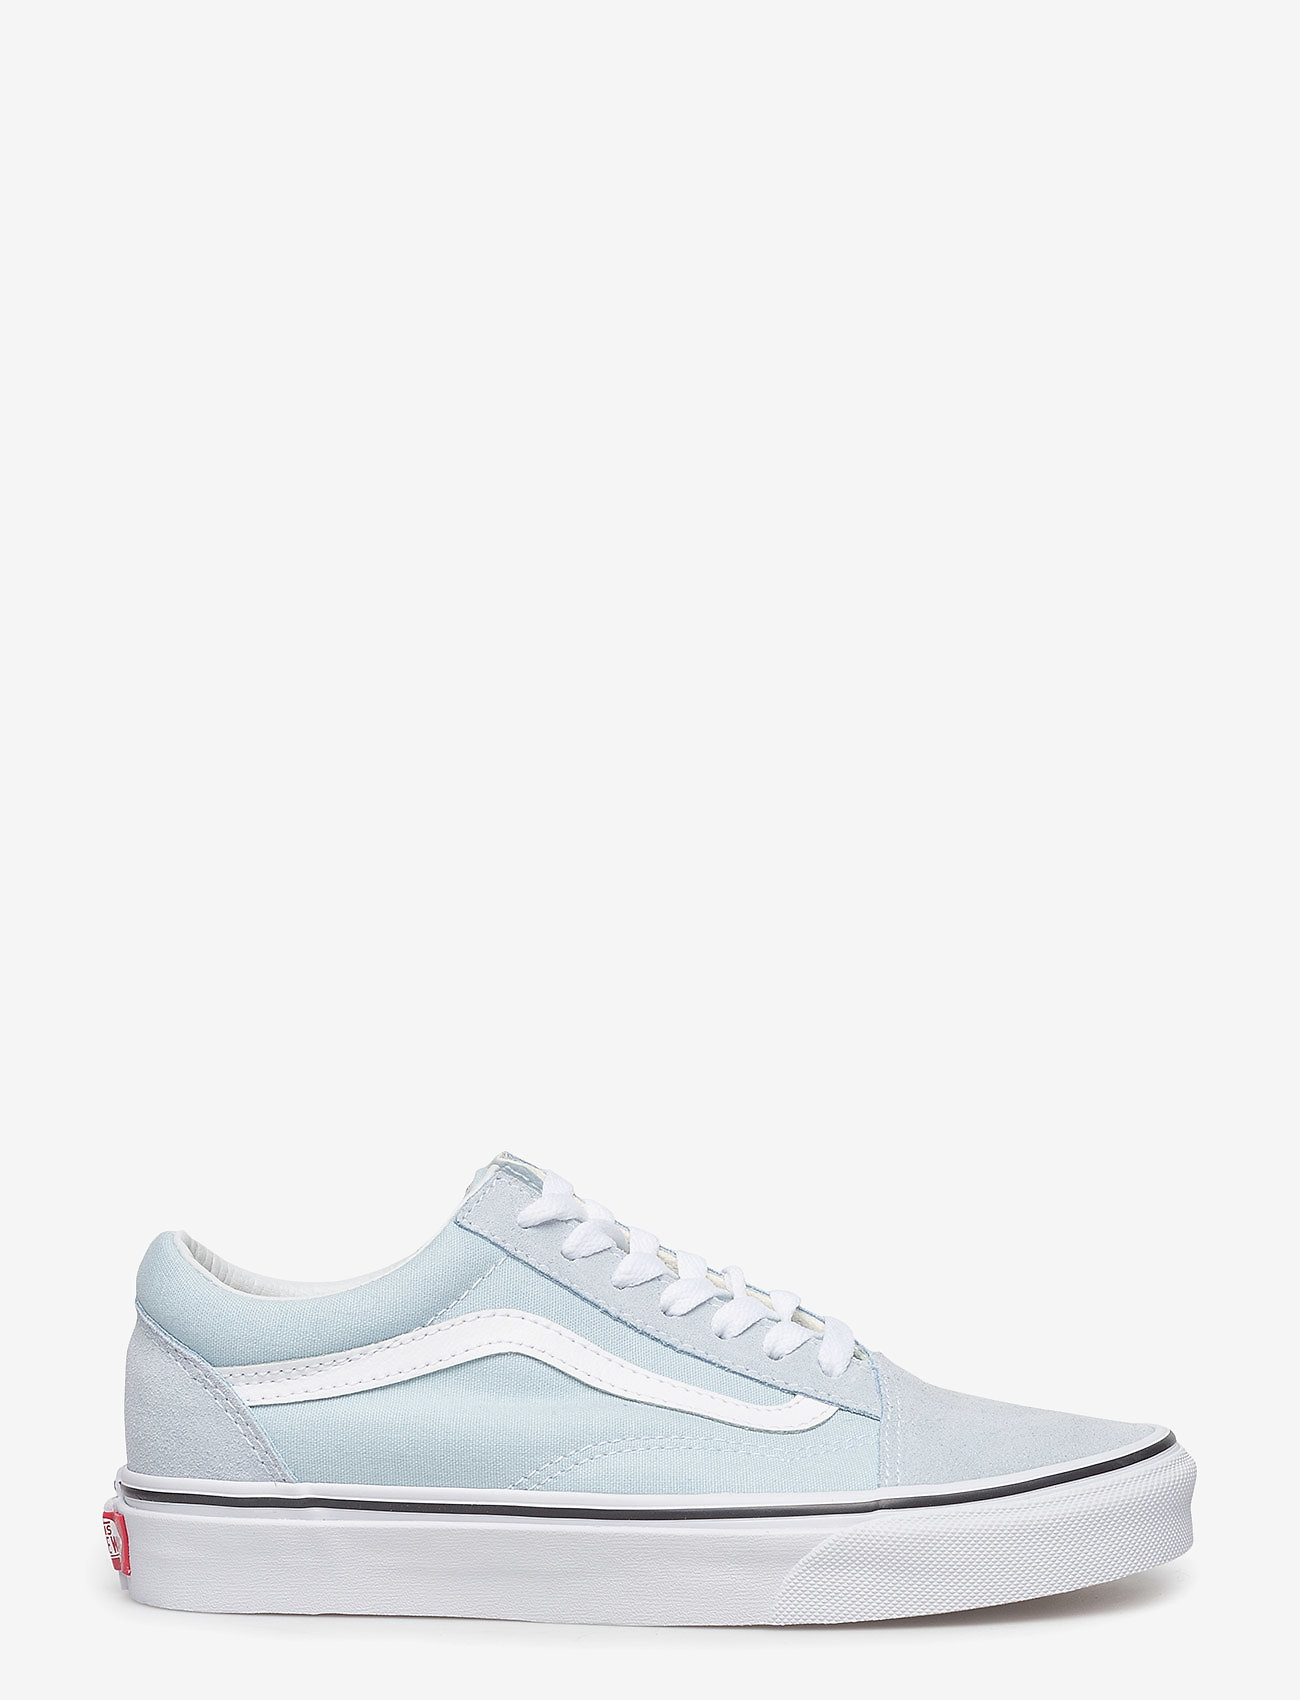 VANS - UA Old Skool - låga sneakers - baby blue/true white - 1